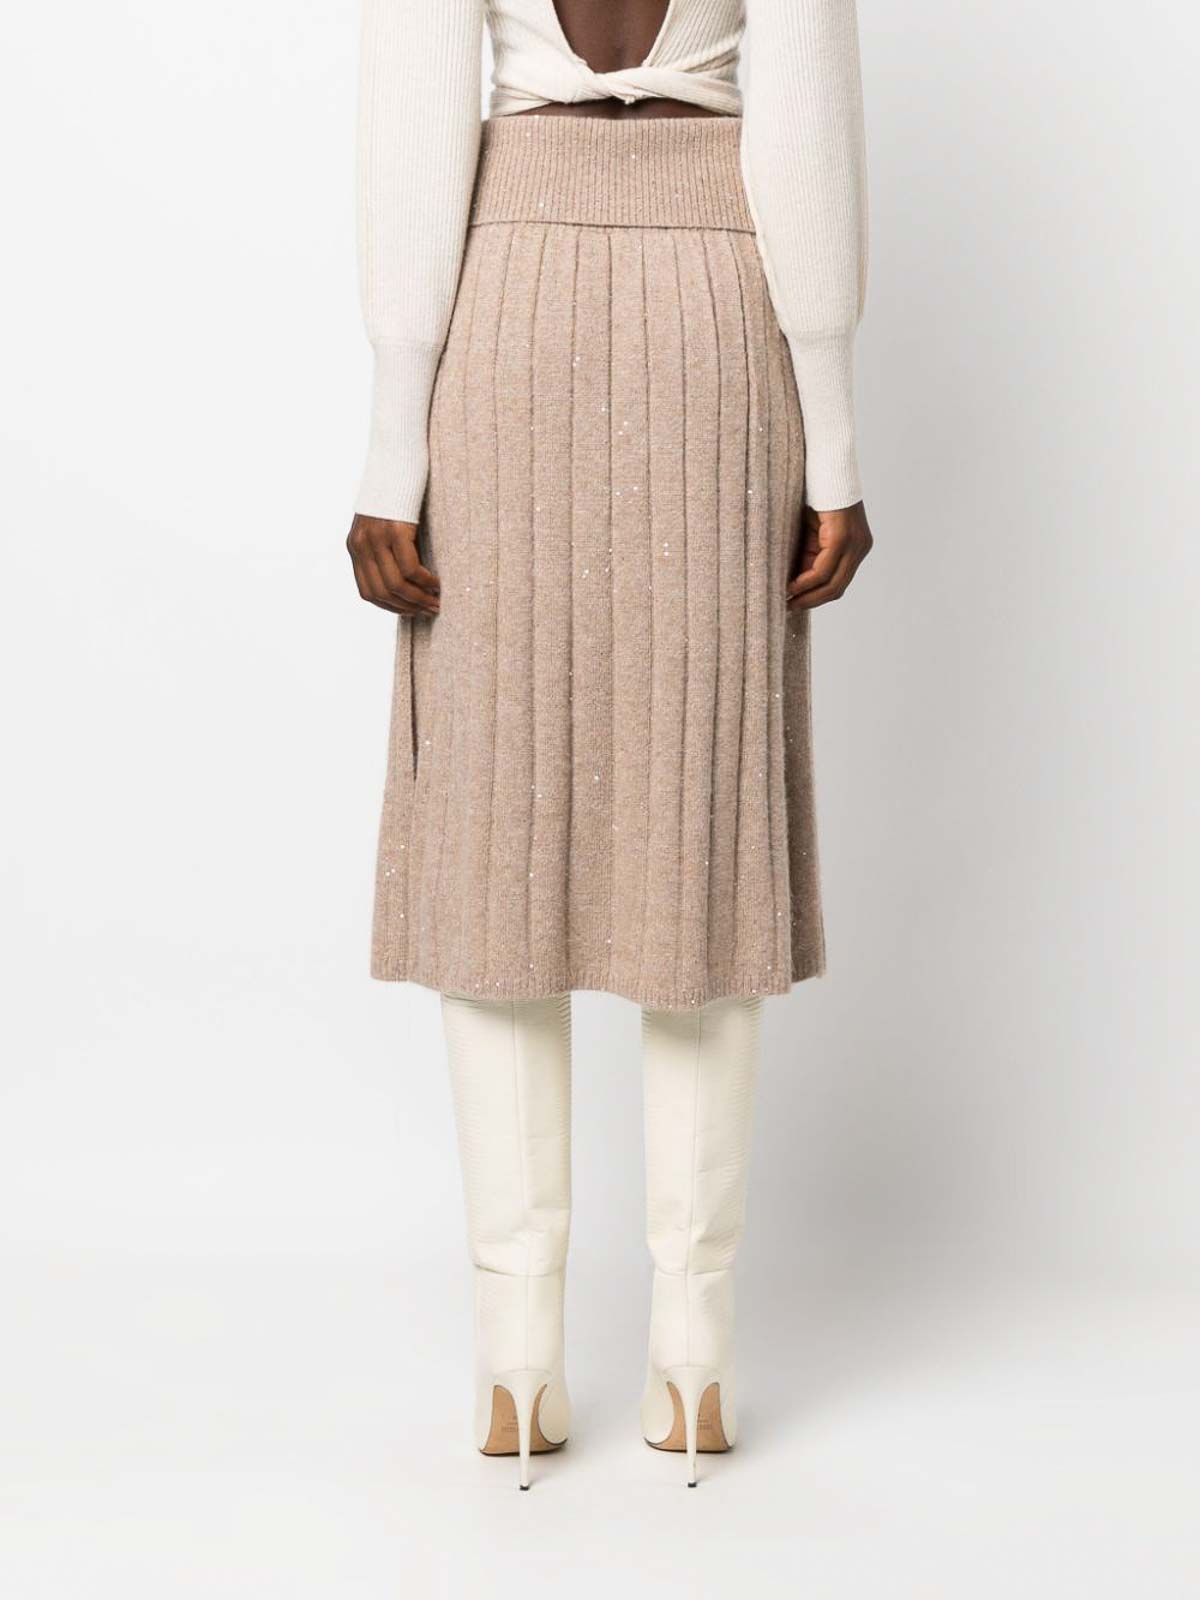 The Knit Midi Skirt, Women Online